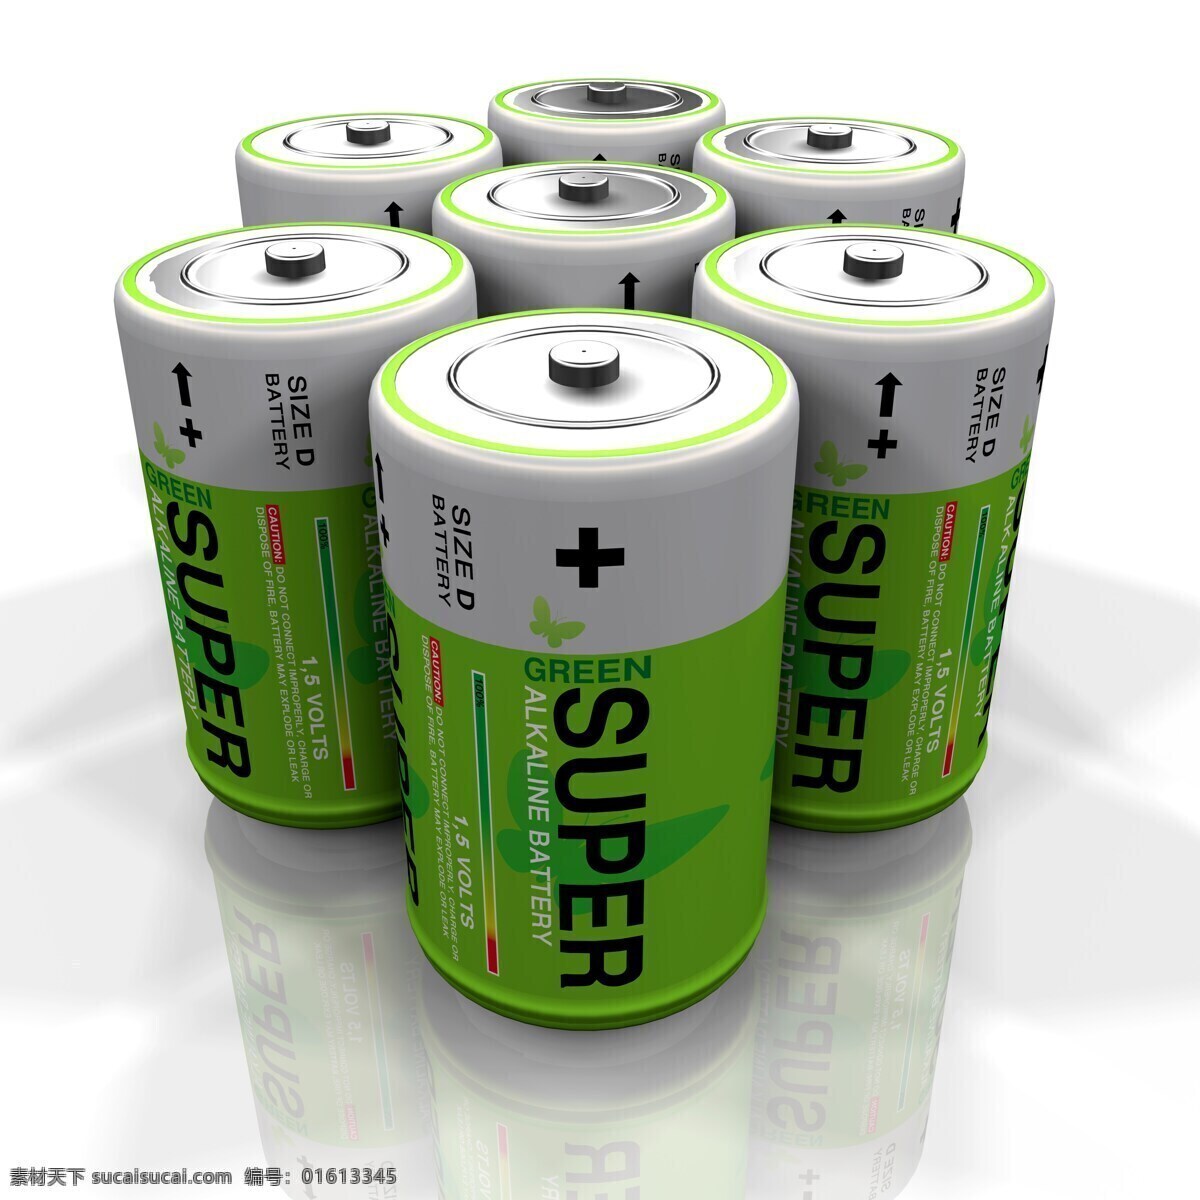 绿色 包装 皮 电池 一次性电池 生活用品 绿色包装皮 其他类别 生活百科 白色